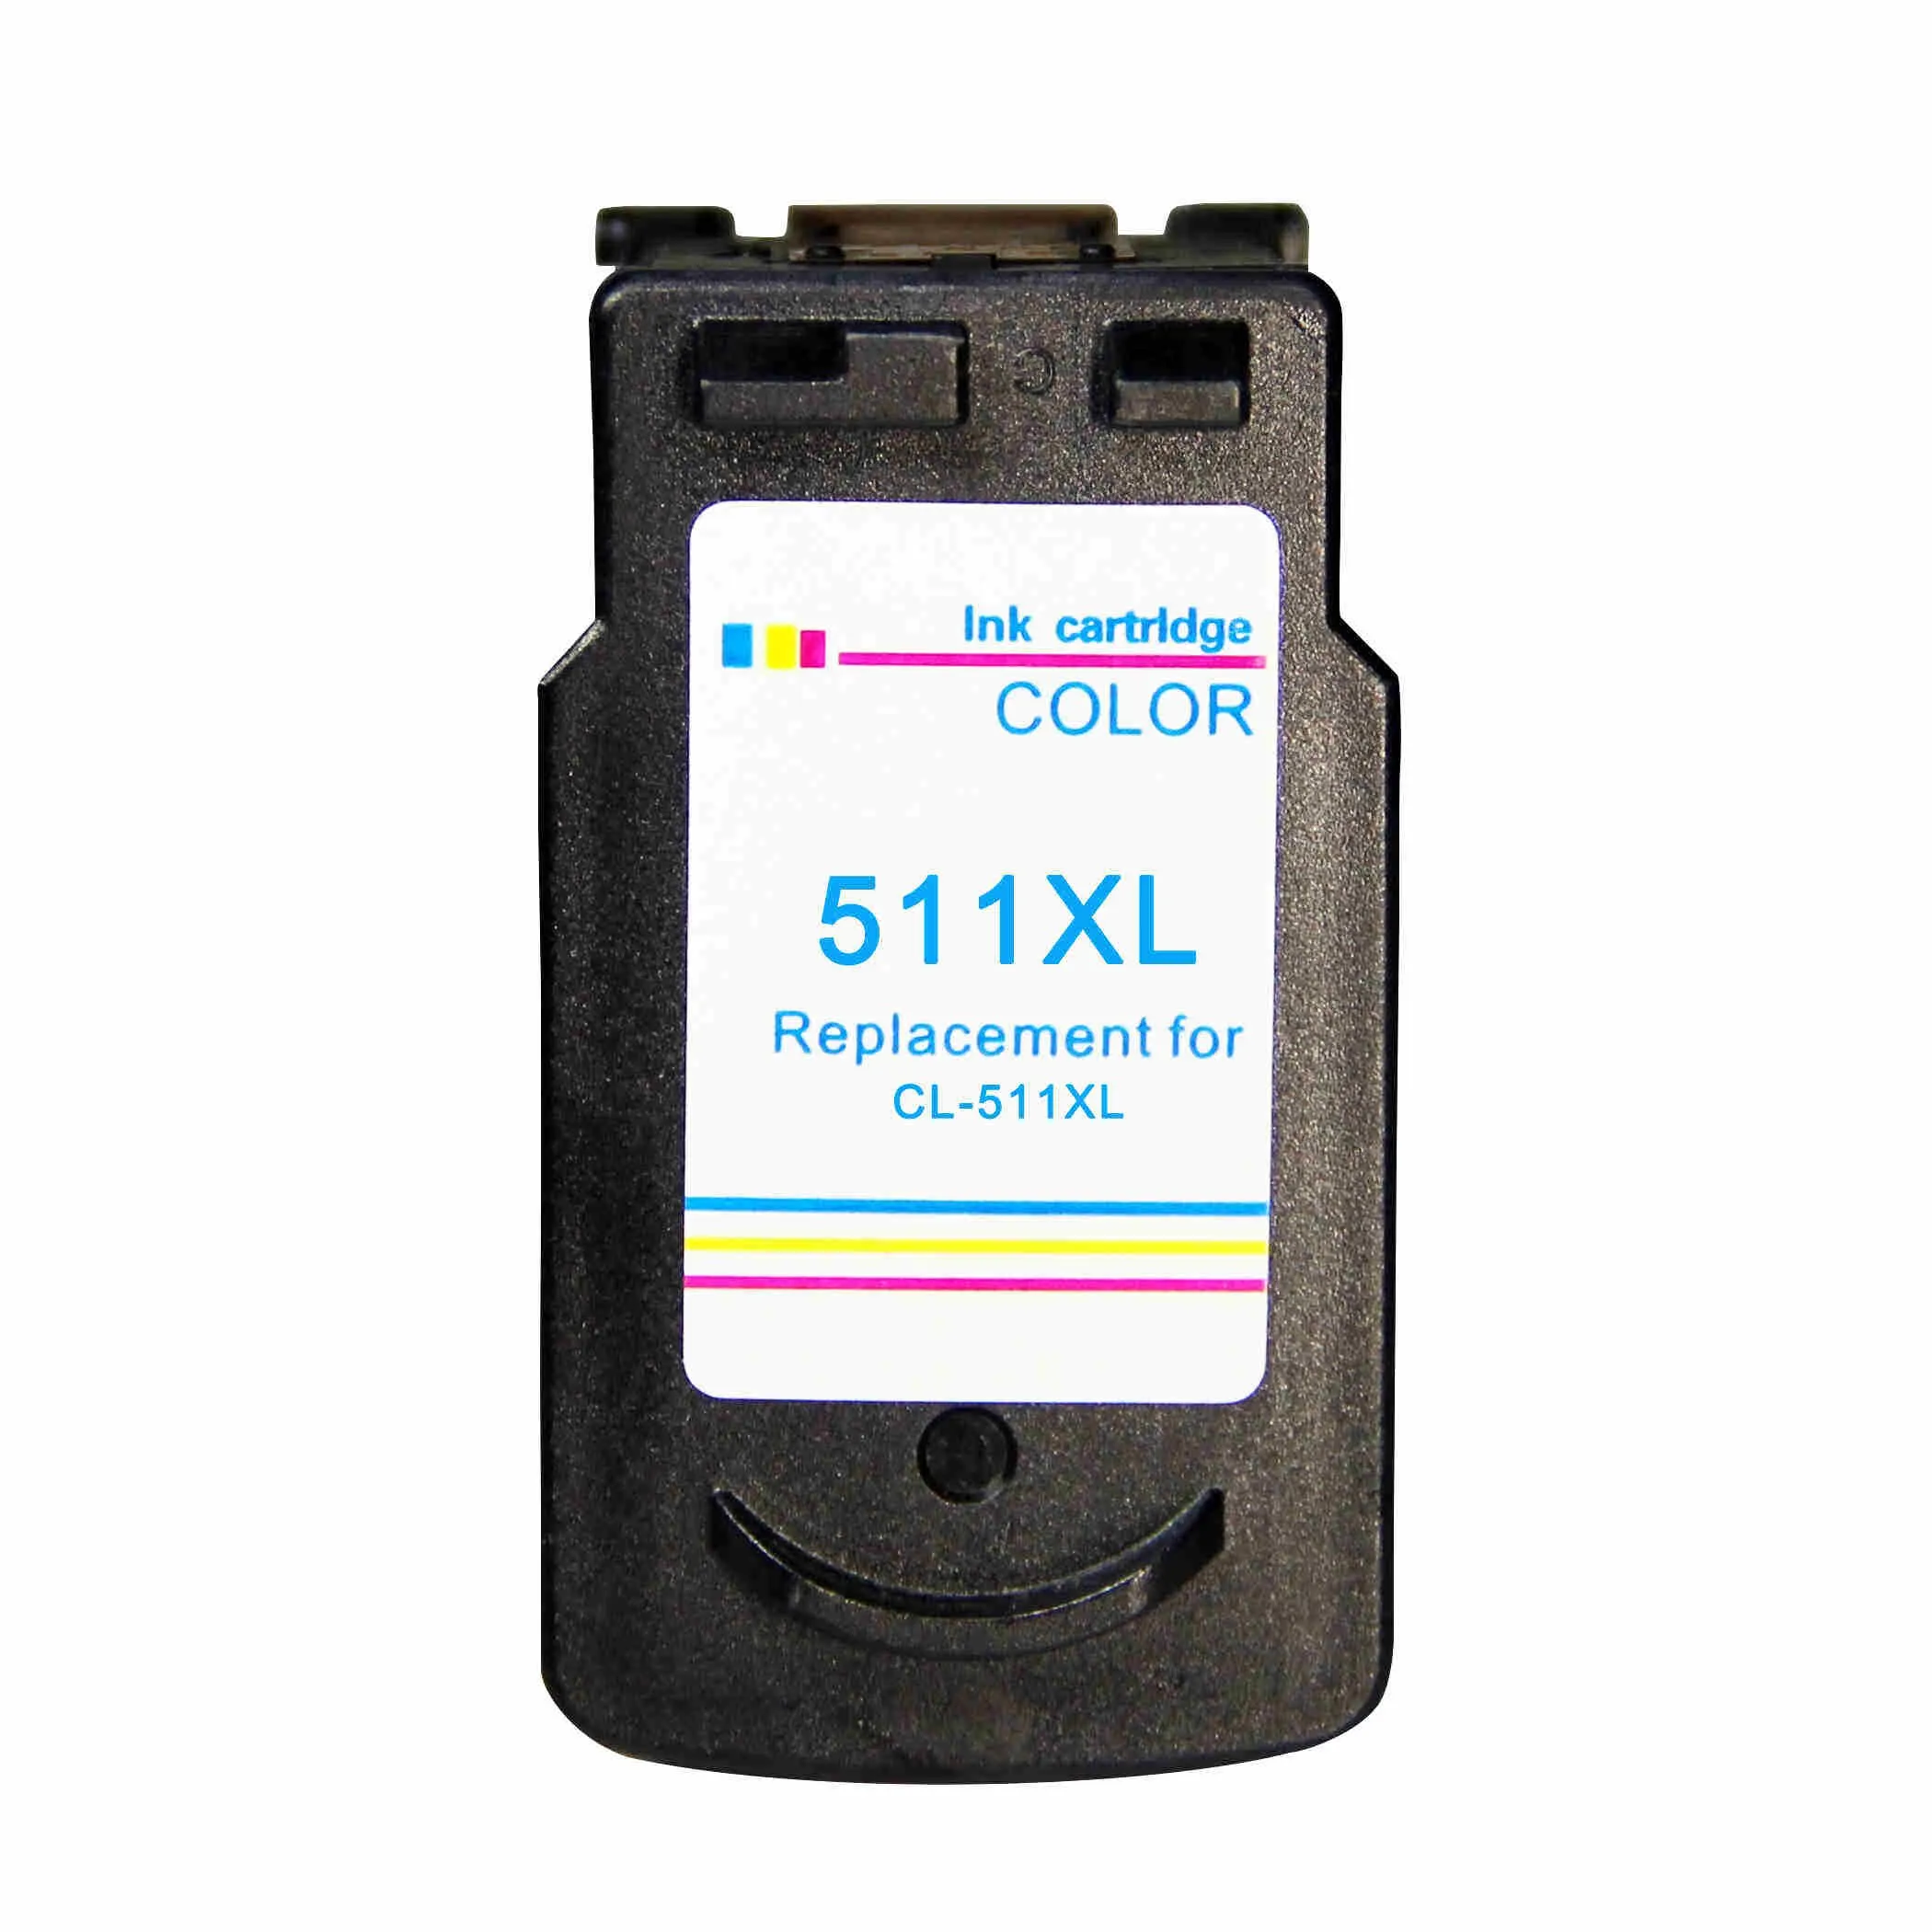 Чернильный картридж Canon PG 510 CL 511 заменяемая для MP240 MP250 MP260 MP280 MP480 MP490 IP2700 MX320